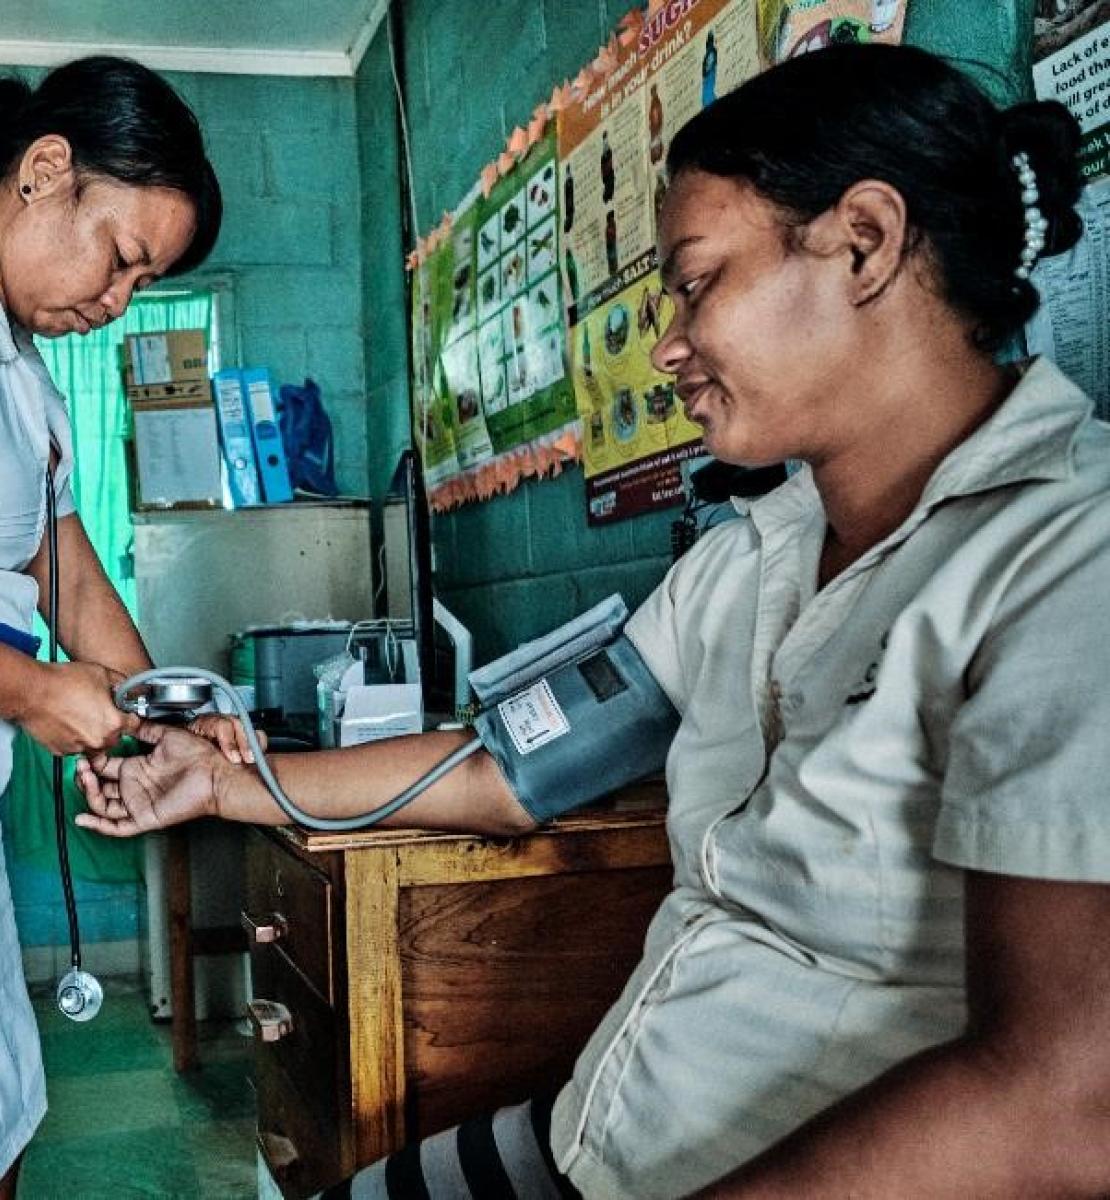 护士为病人测量血压 